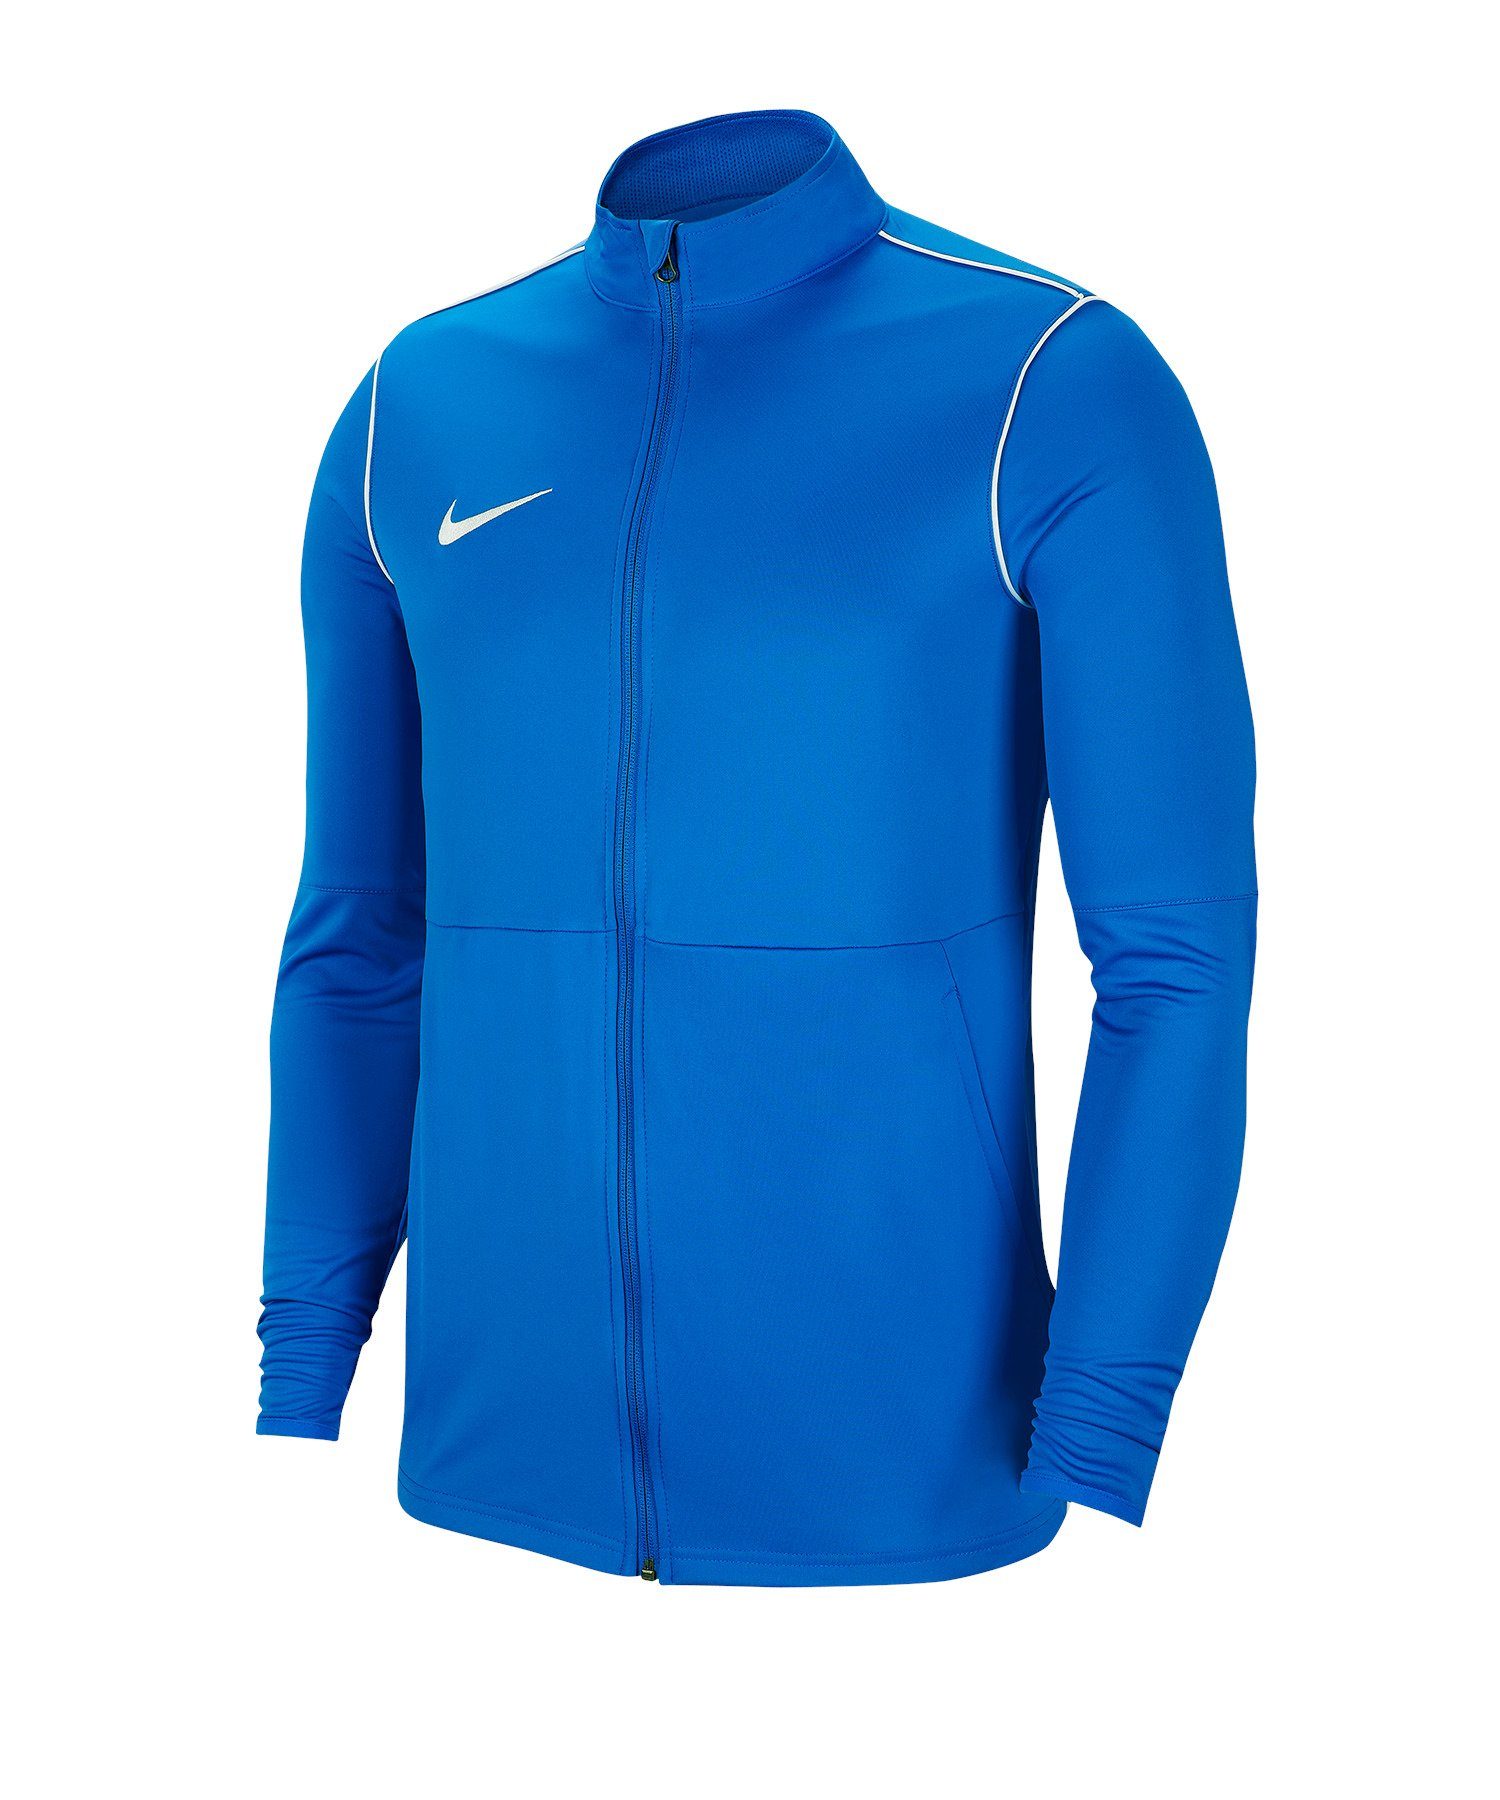 Nike Sweatjacke Park 20 Training Jacke blauweiss